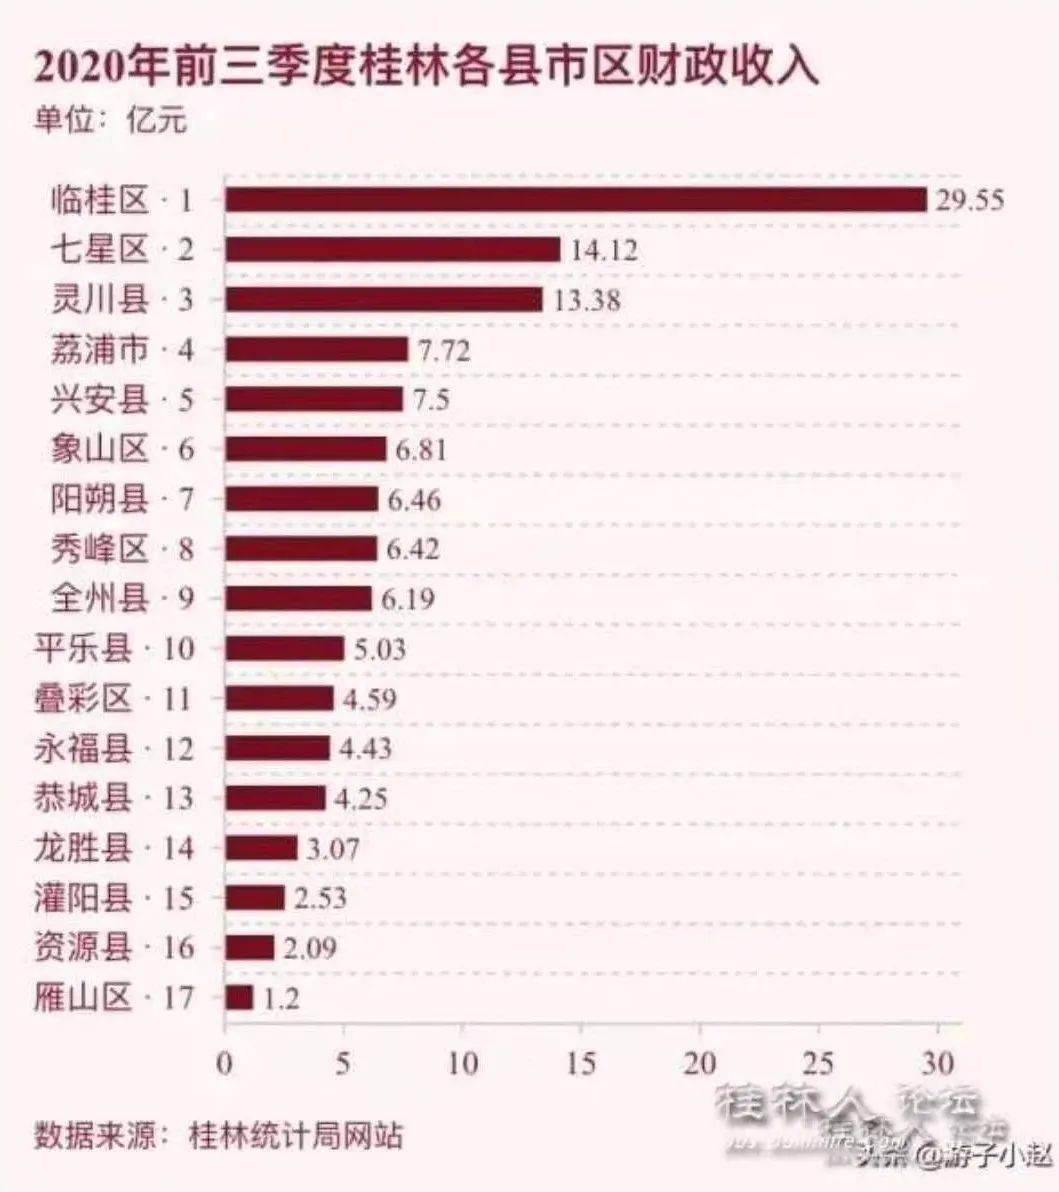 2020年各省税收排名_桂林2020年前3季各县区财政收入排名曝光!灌阳排在…